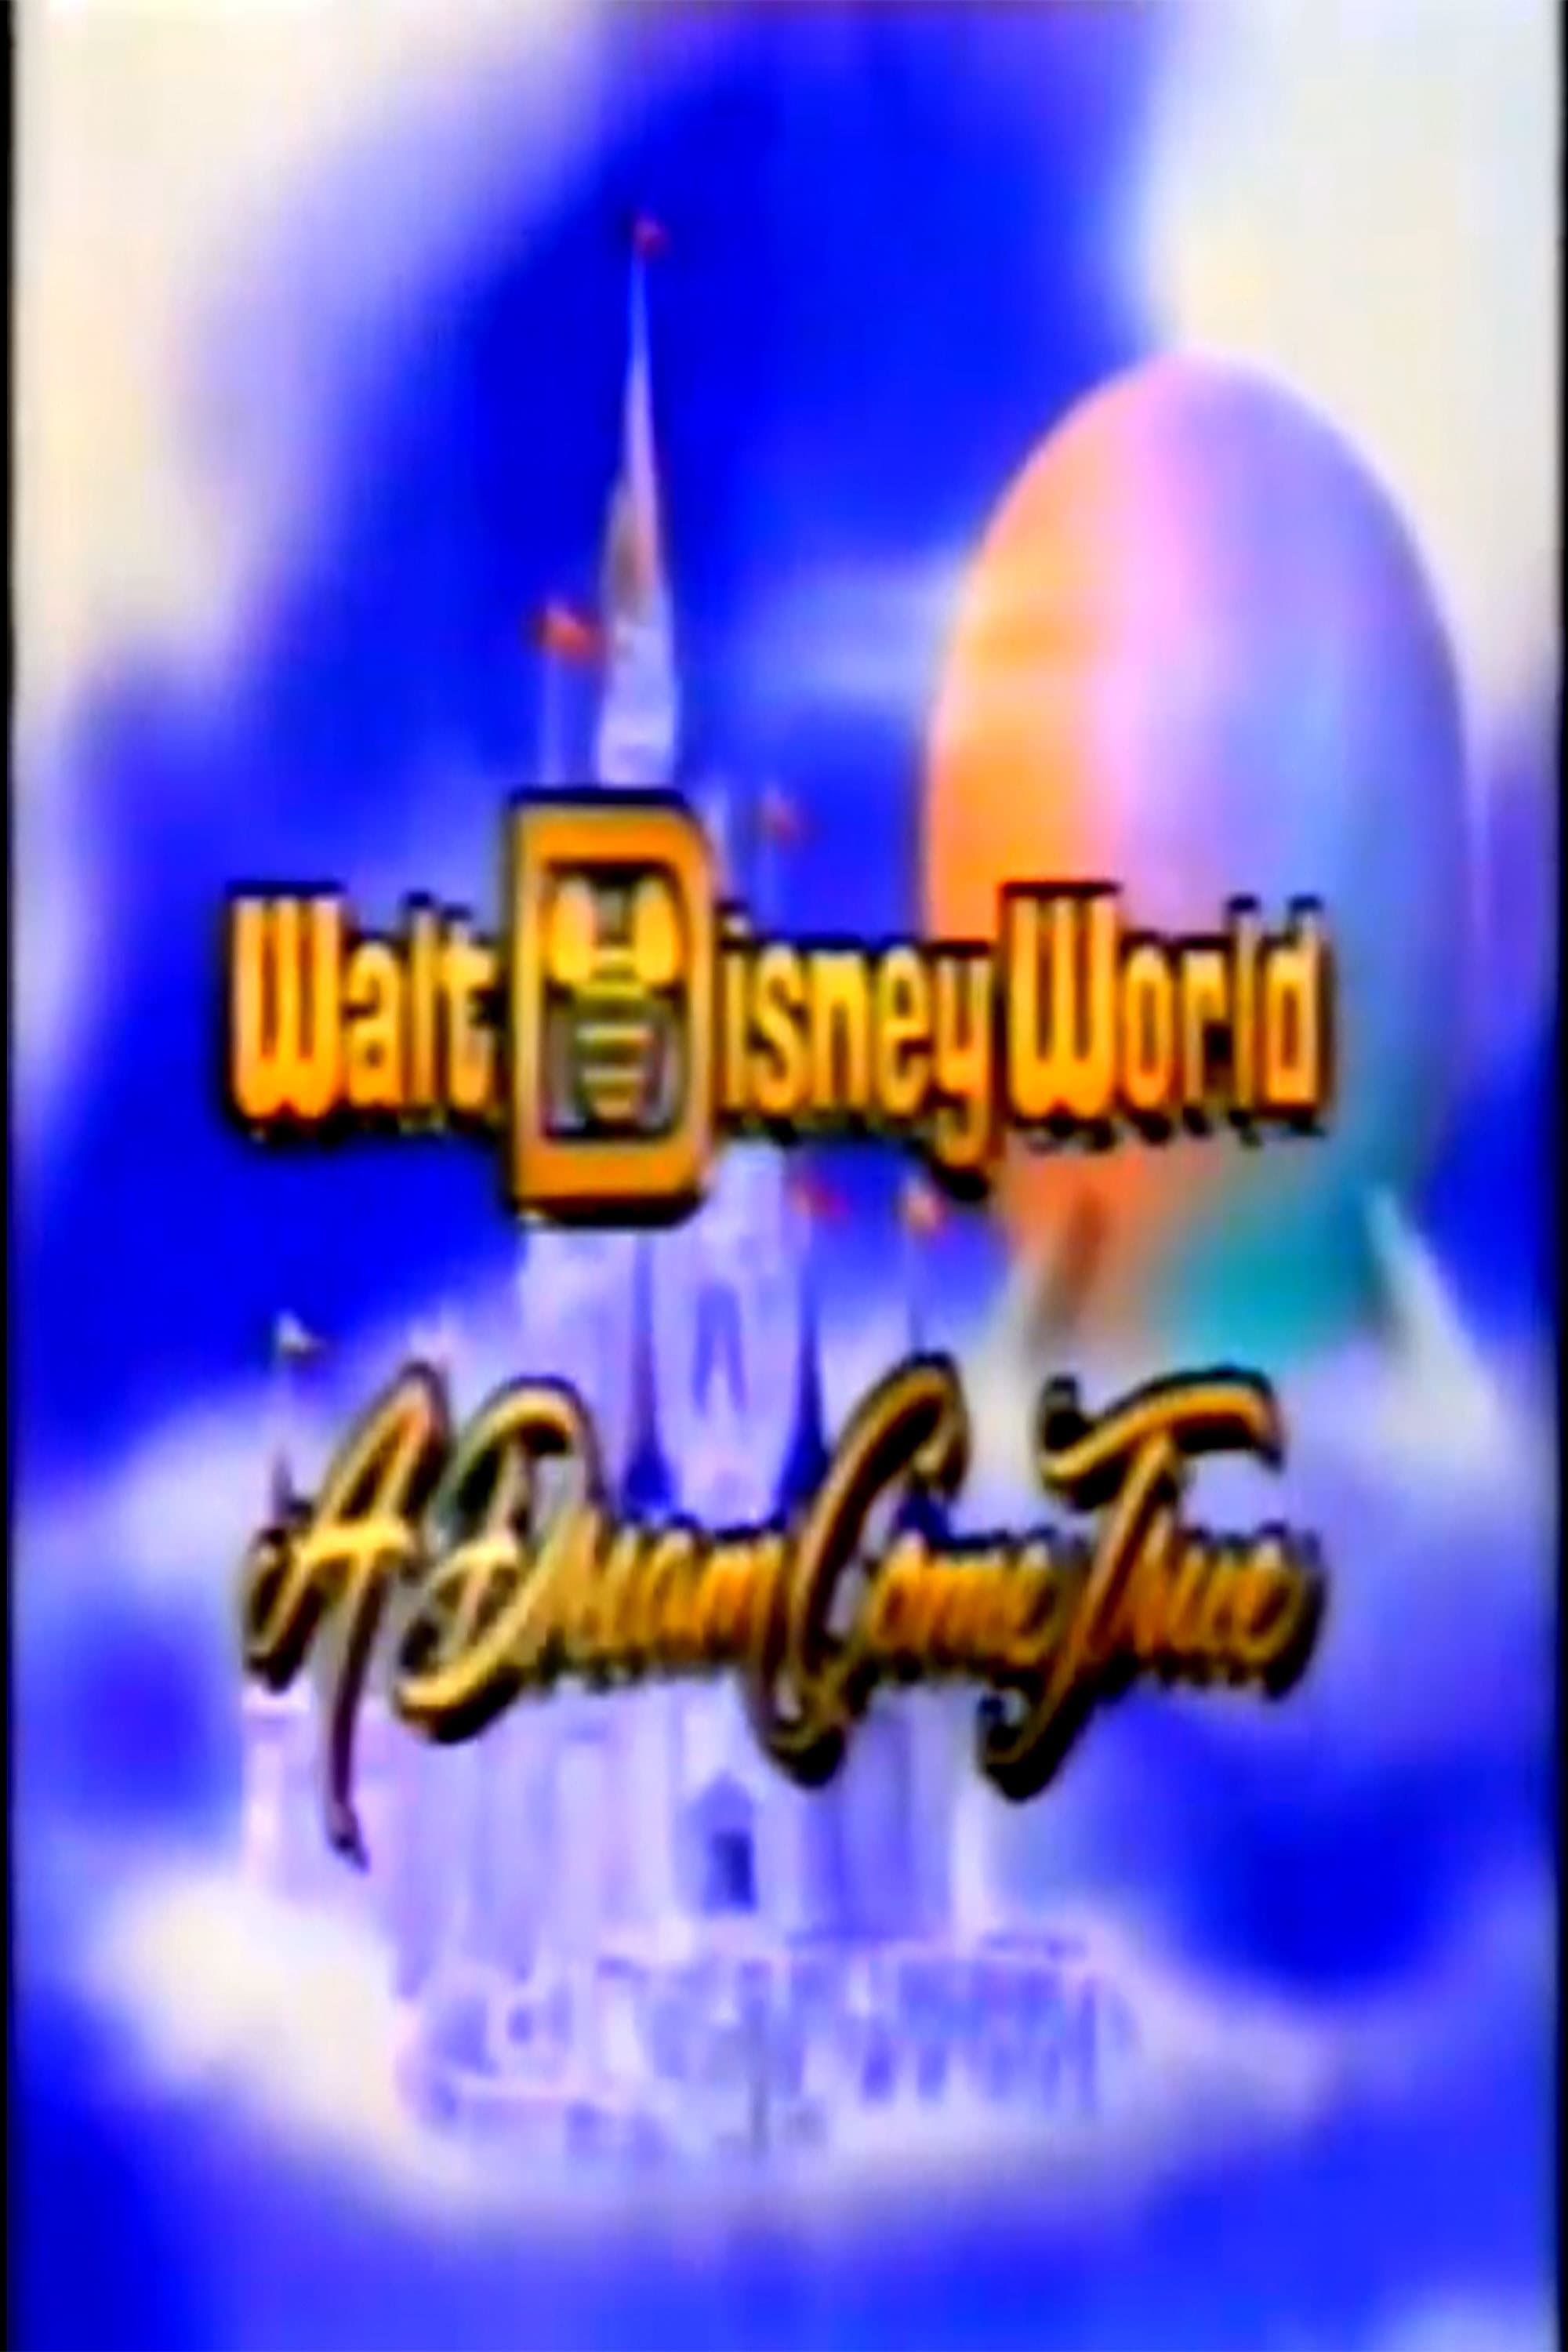 Walt Disney World: A Dream Come True (1986)